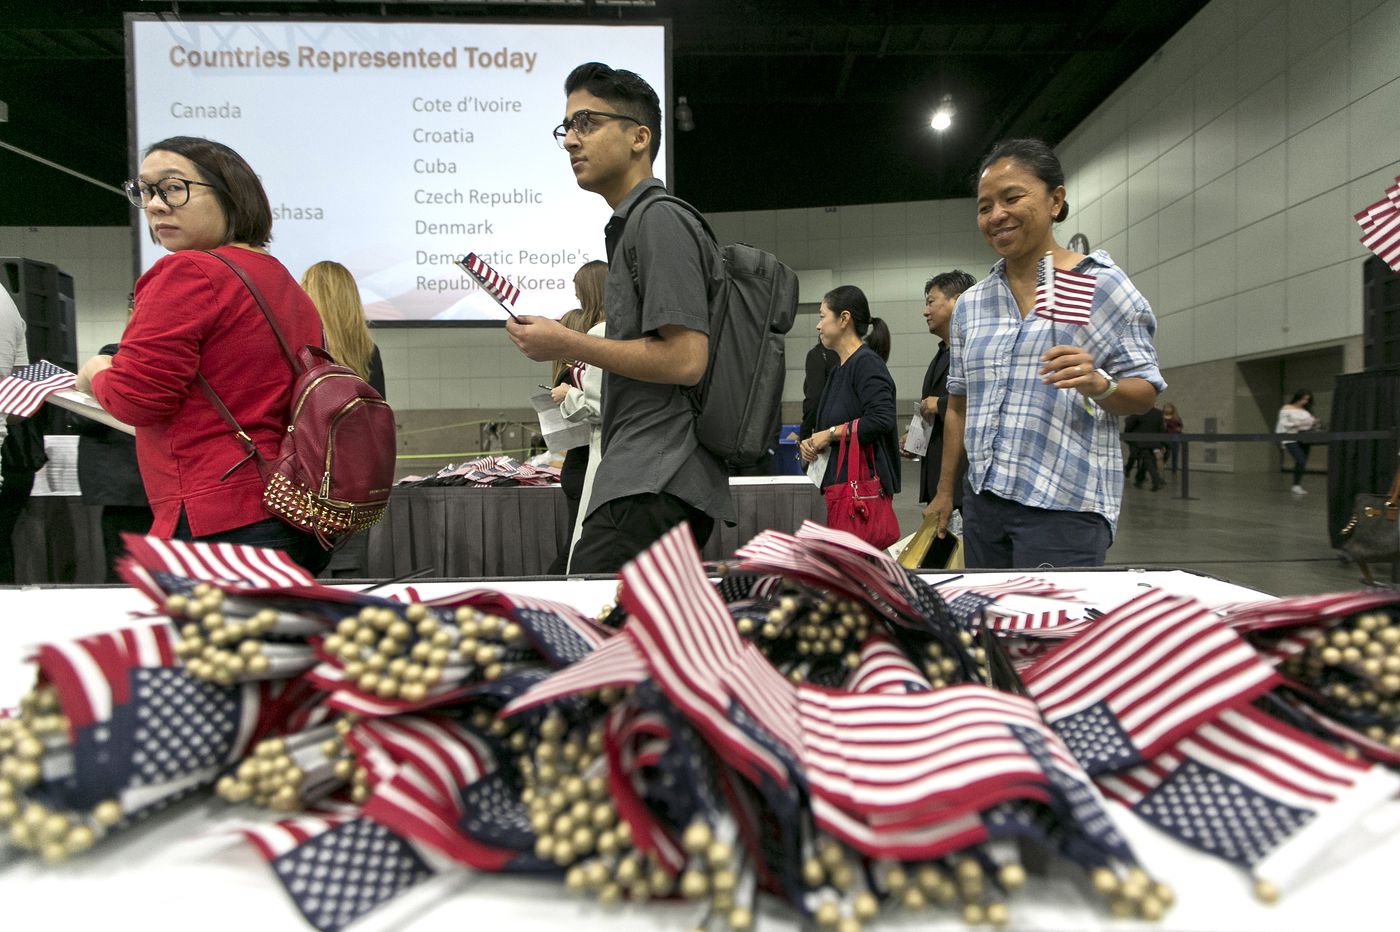 Postulantes a la ciudadanía americana toman sus banderitas y se preparan para hacer el juramento. AP